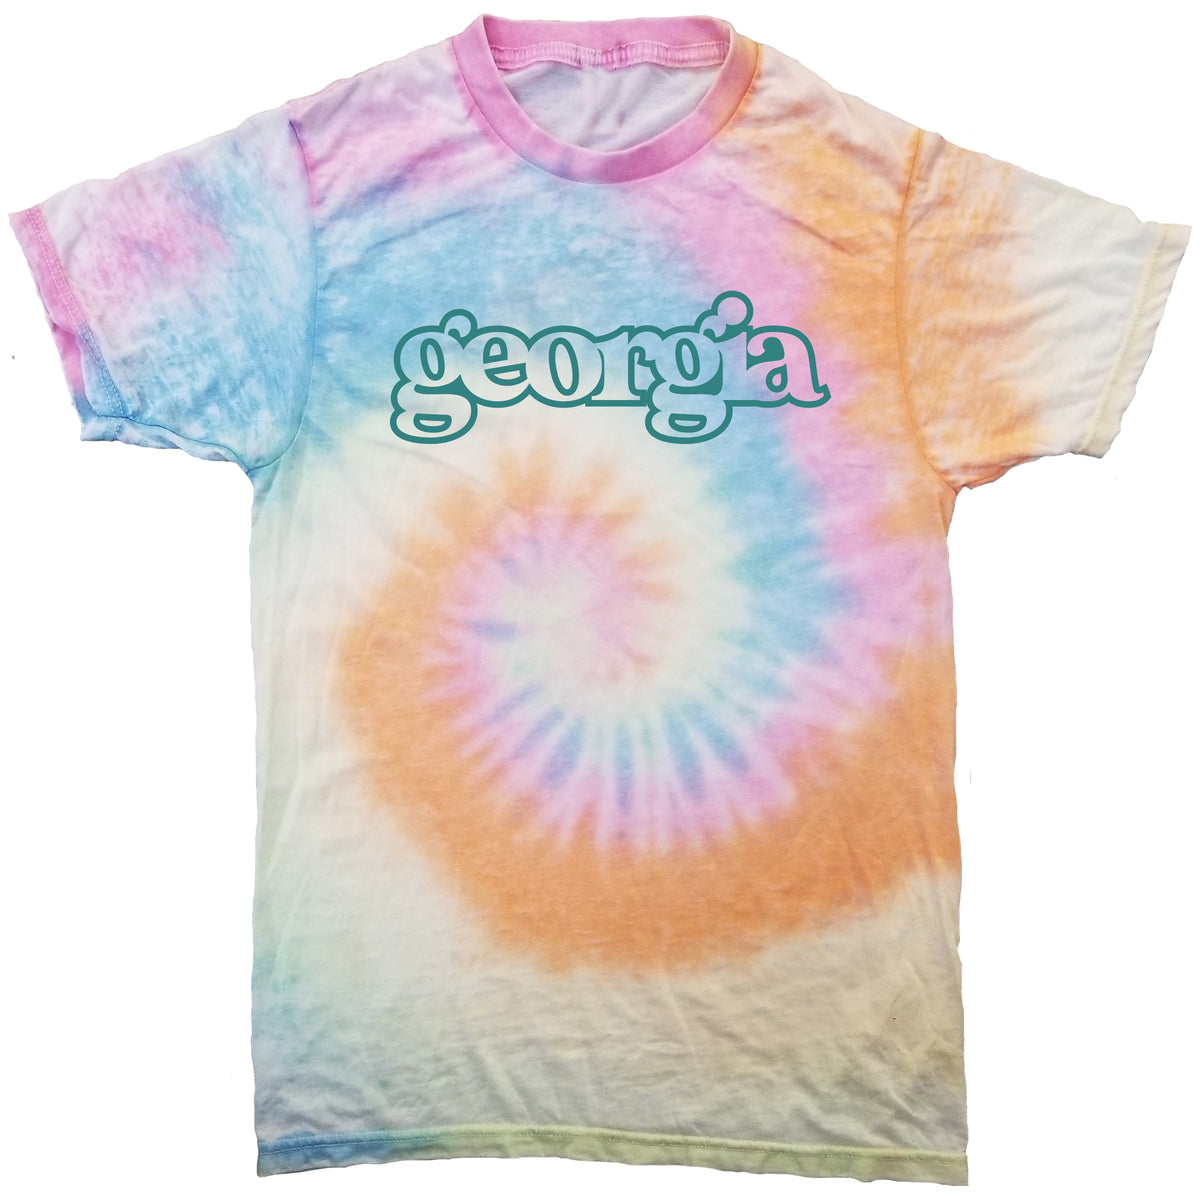 Georgia Pastel Tie-Dye T-Shirt